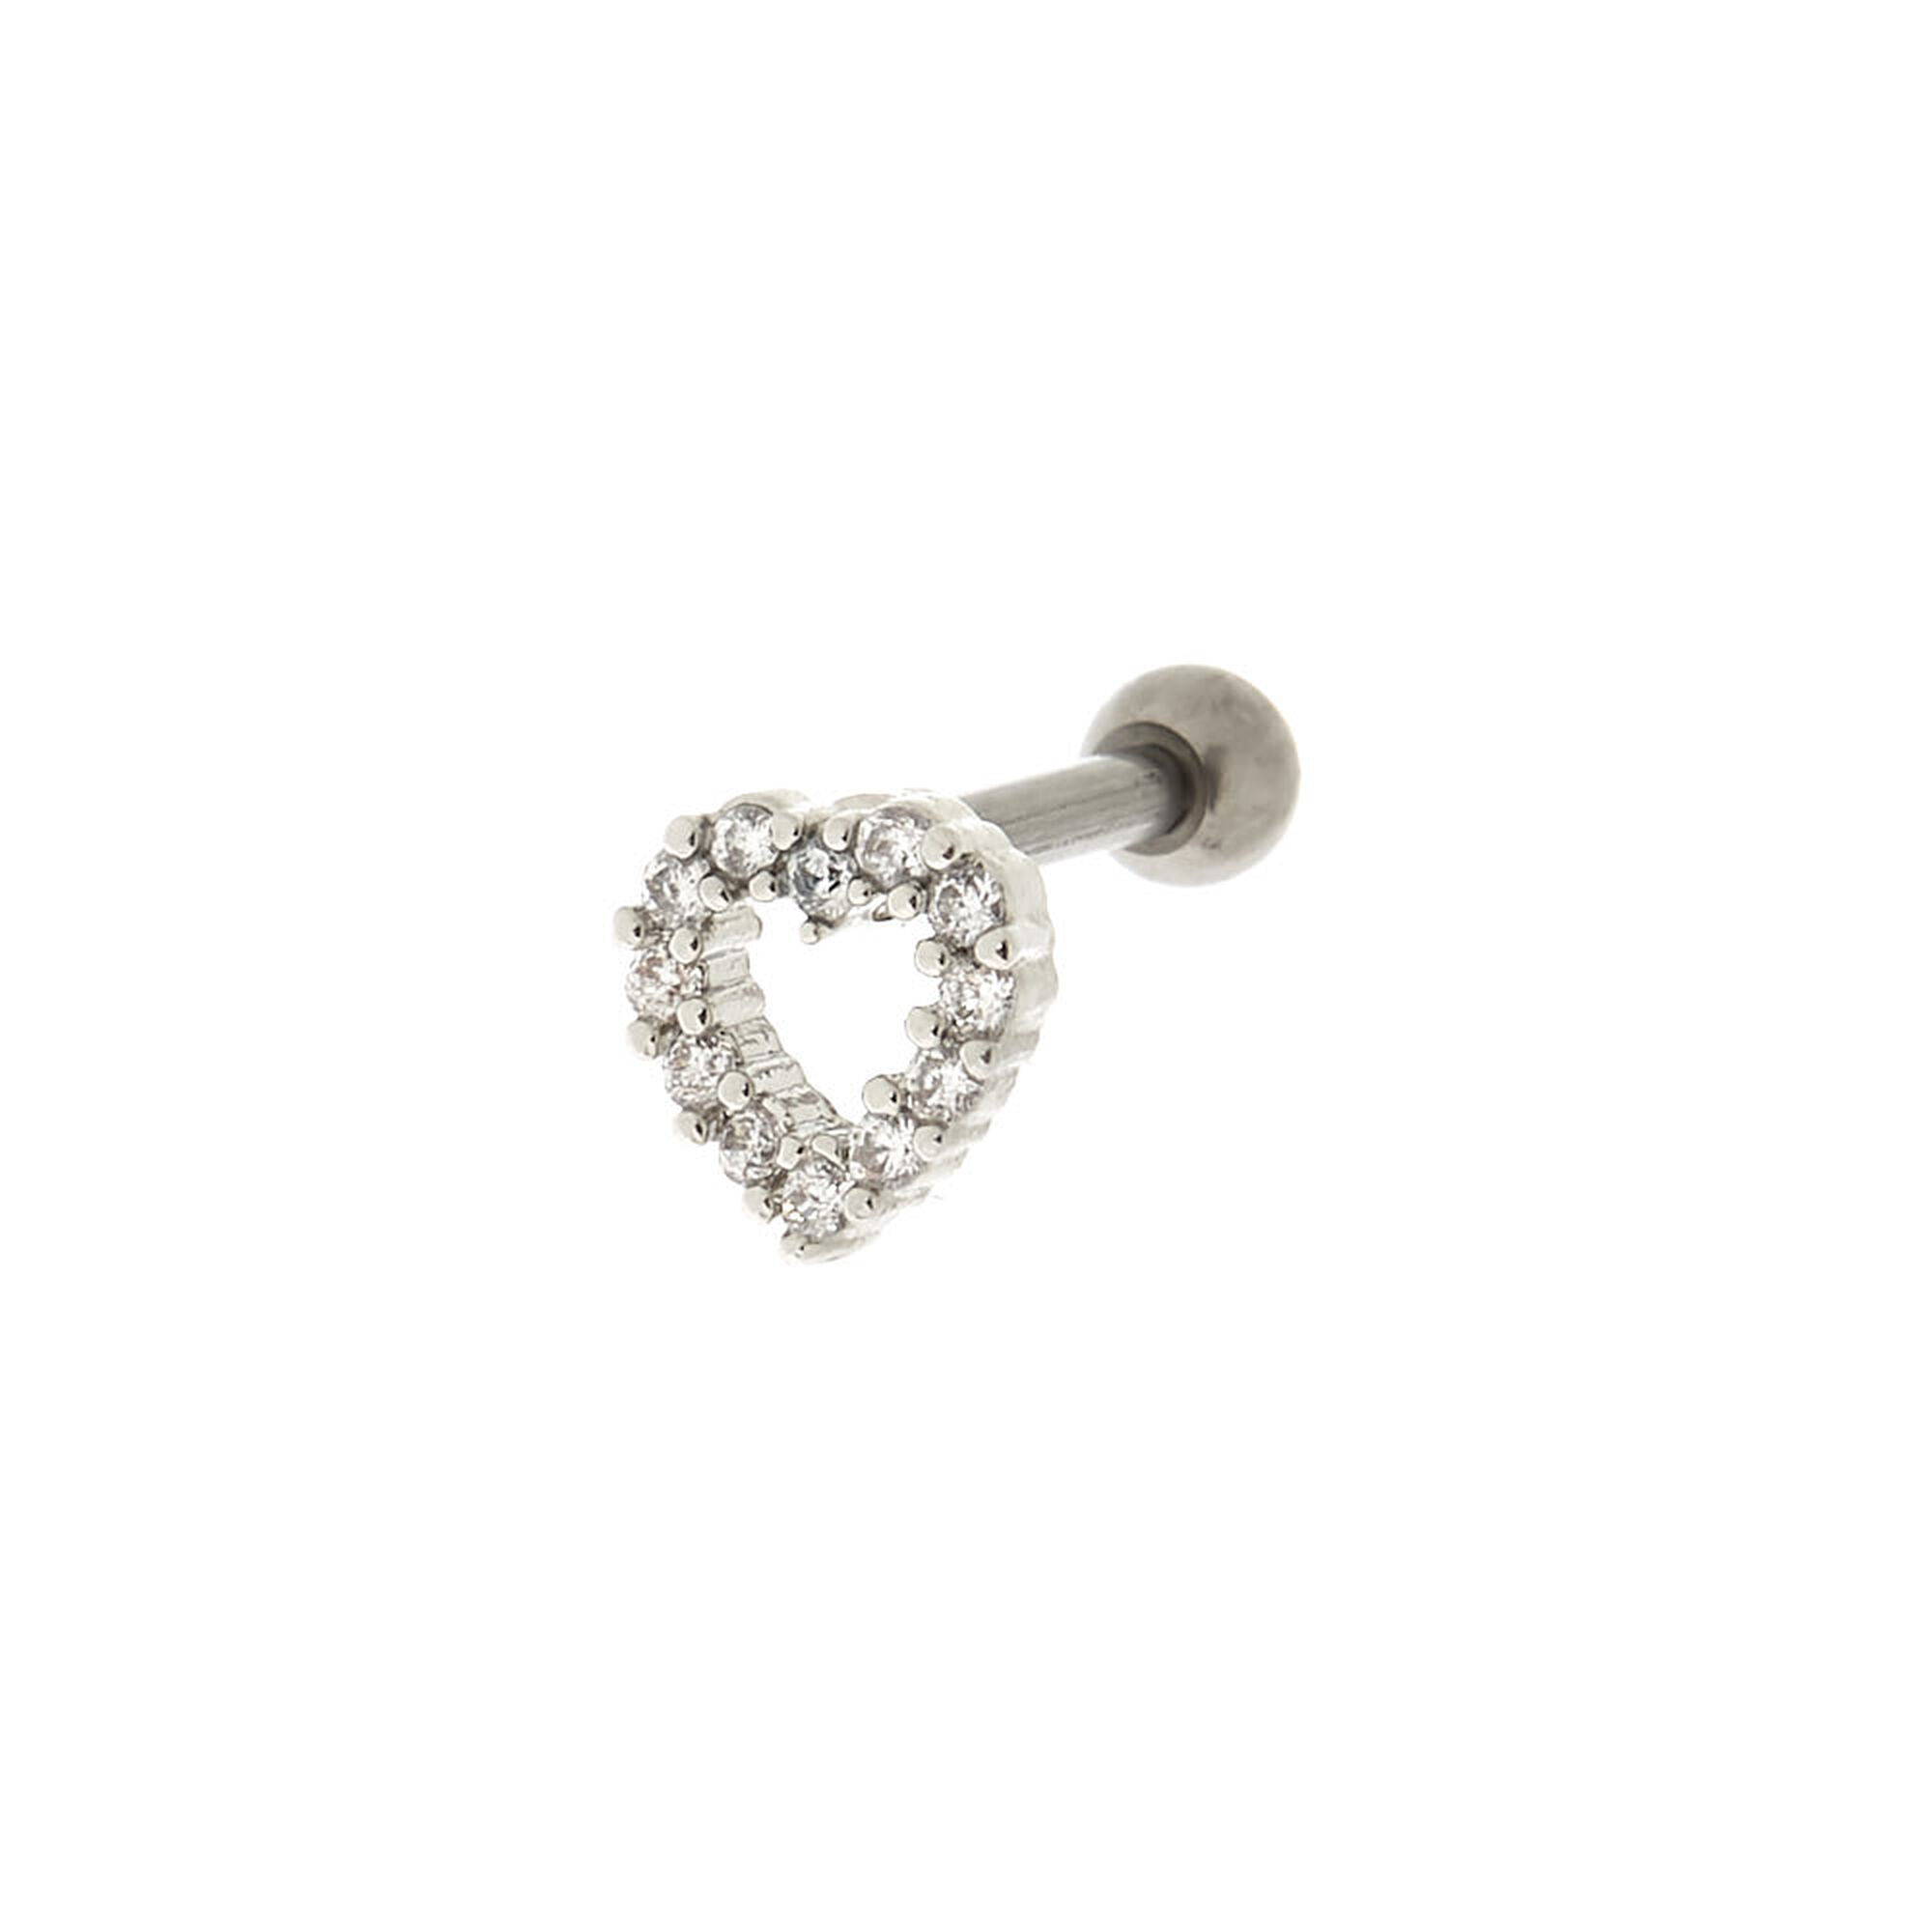 Claire's Boucle de cartilage avec cœur en strass 1,2 cm couleurs argentée et titanée